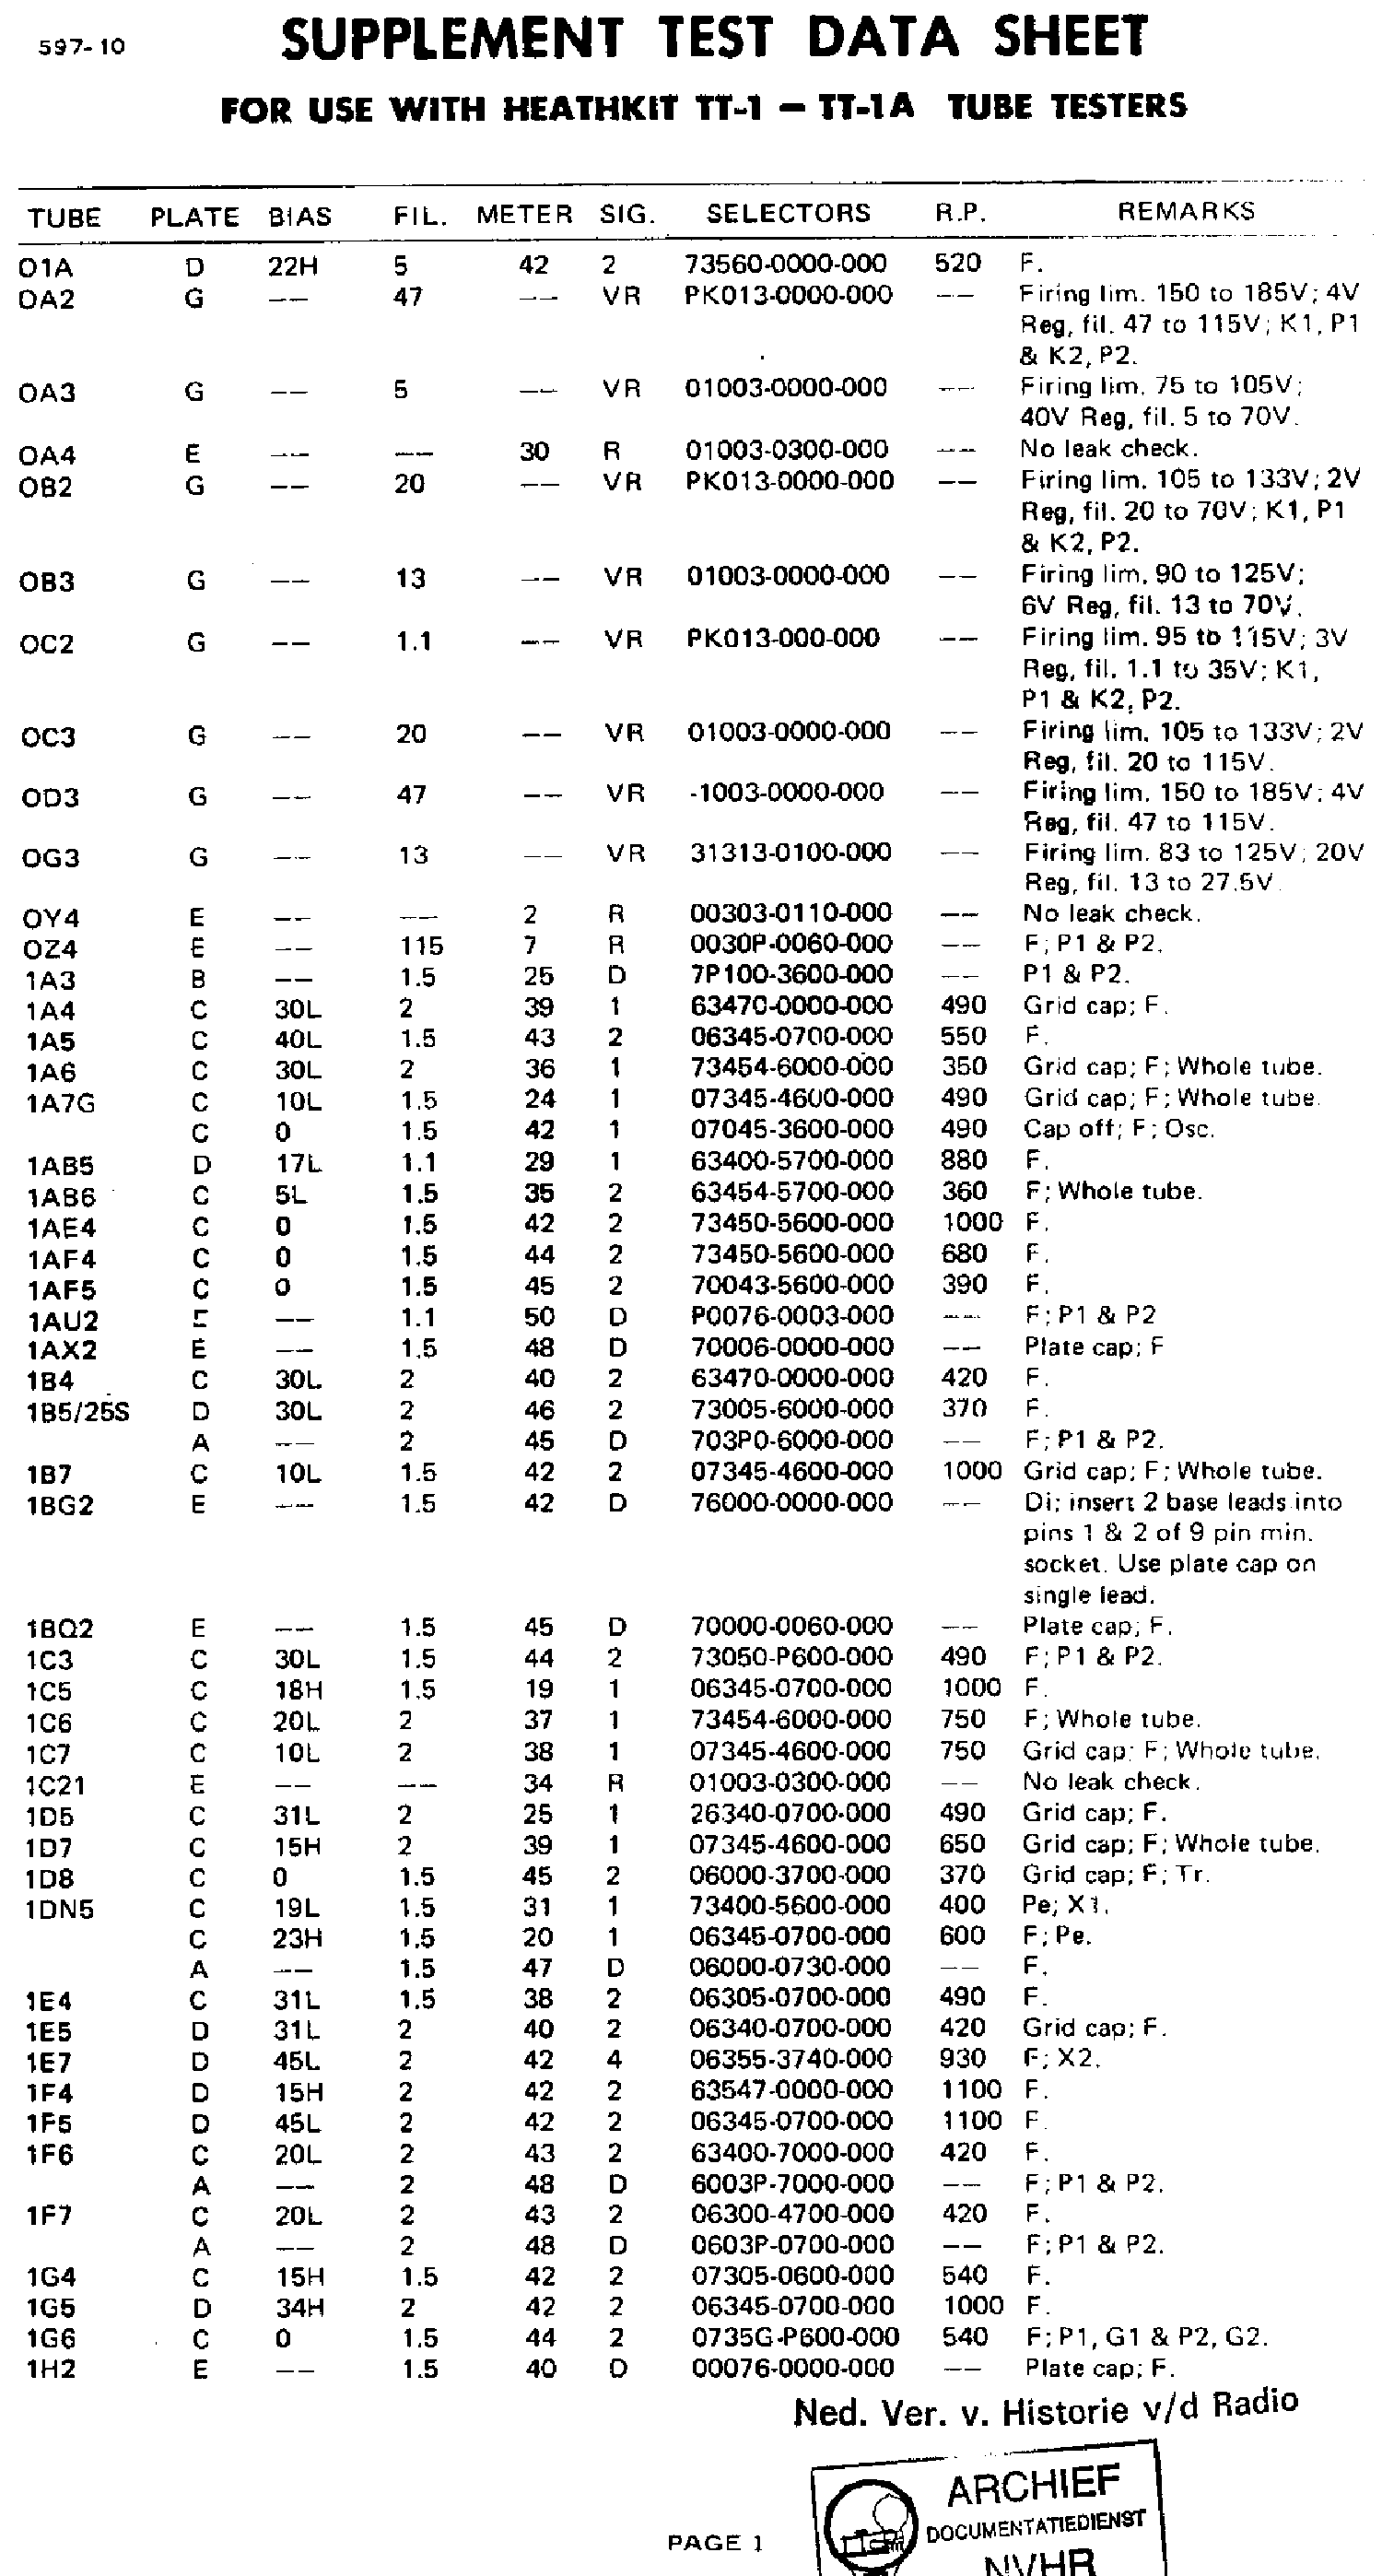 Assembly Manual-Anleitung für Heathkit IT-121 